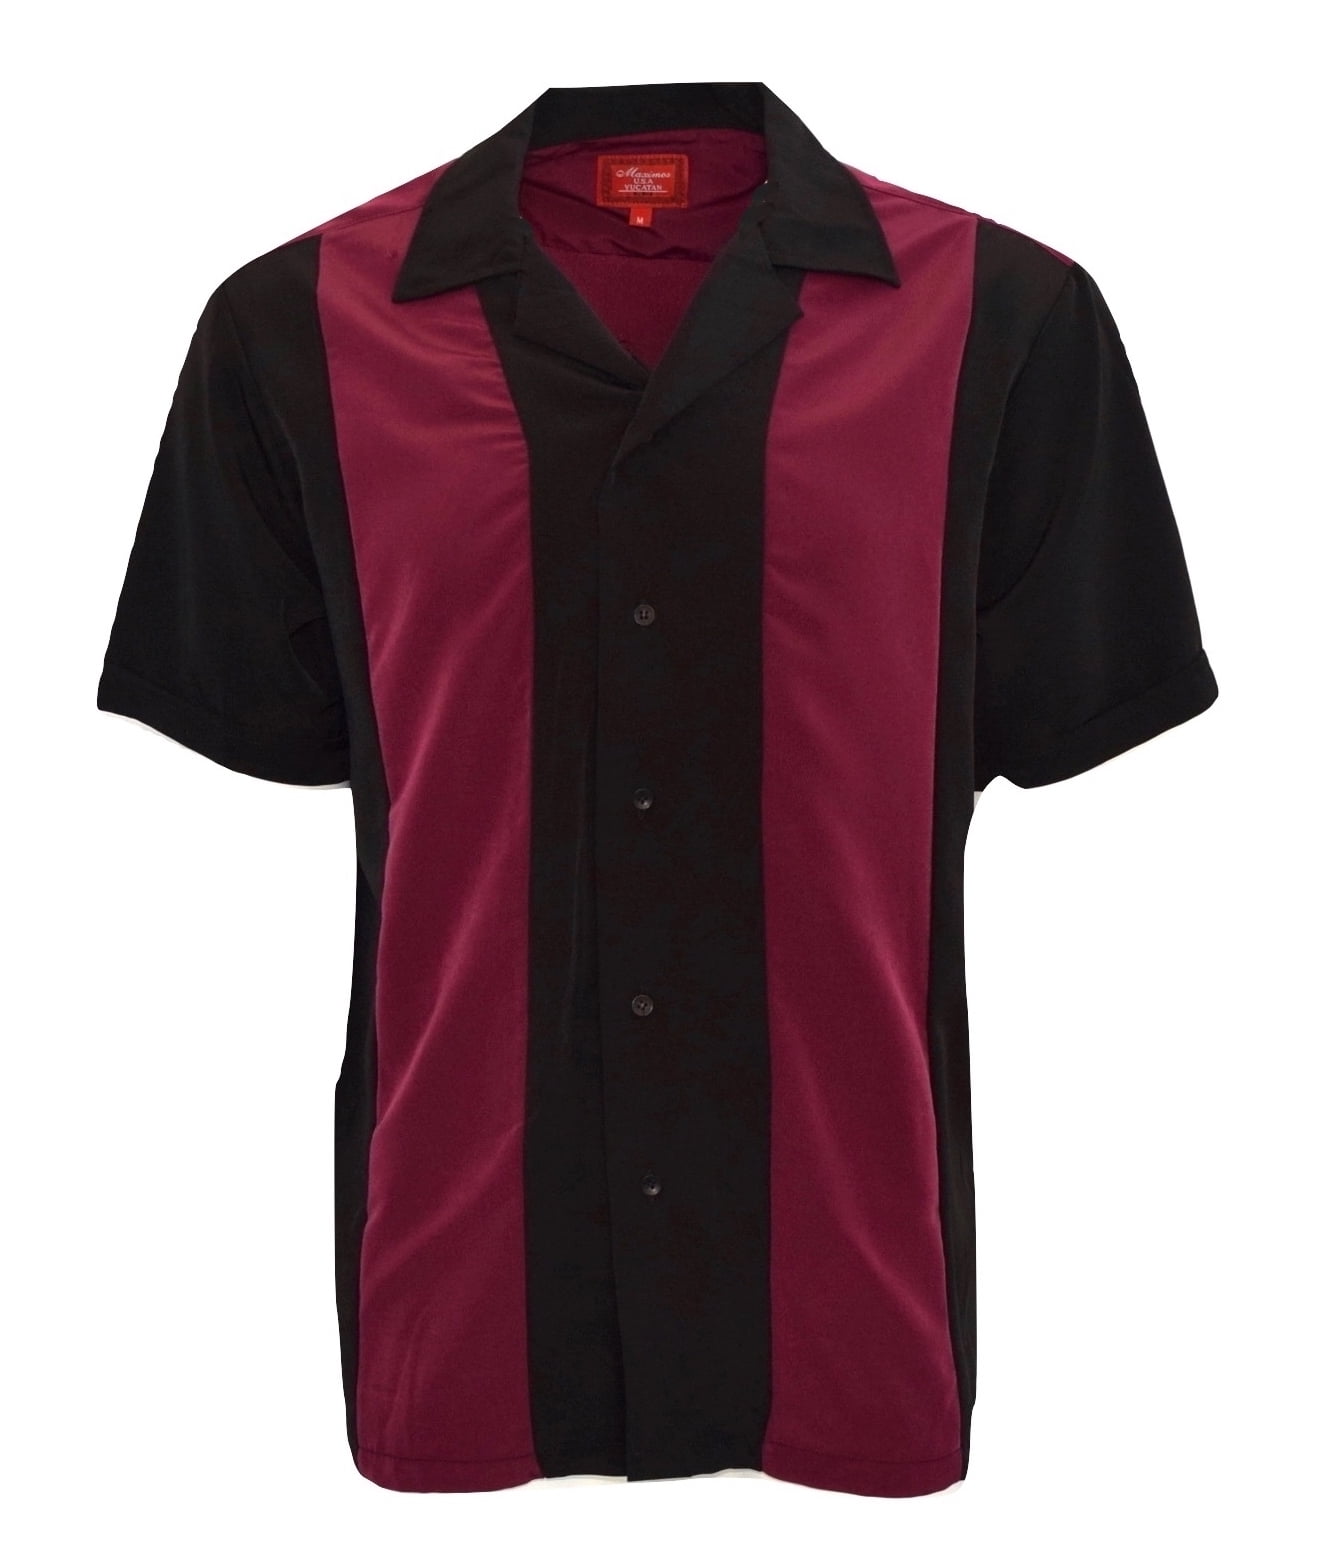 Men's Shirt Two Tone Short Sleeve Button Down Casual Retro Bowling Shirts - Walmart.com